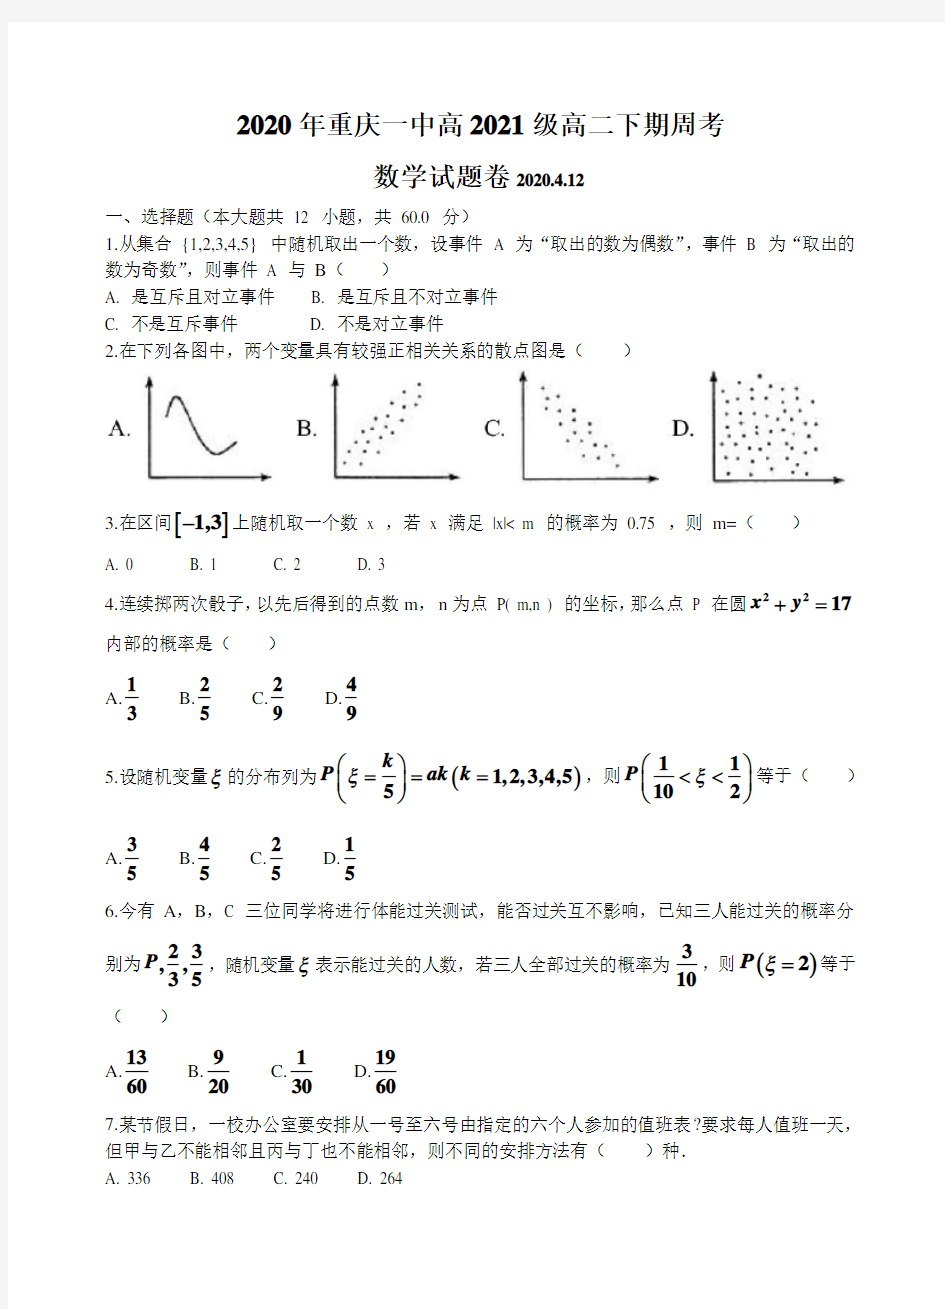 重庆一中2019-2020年高二下学期数学周考(2020.4.12)试卷(无答案)